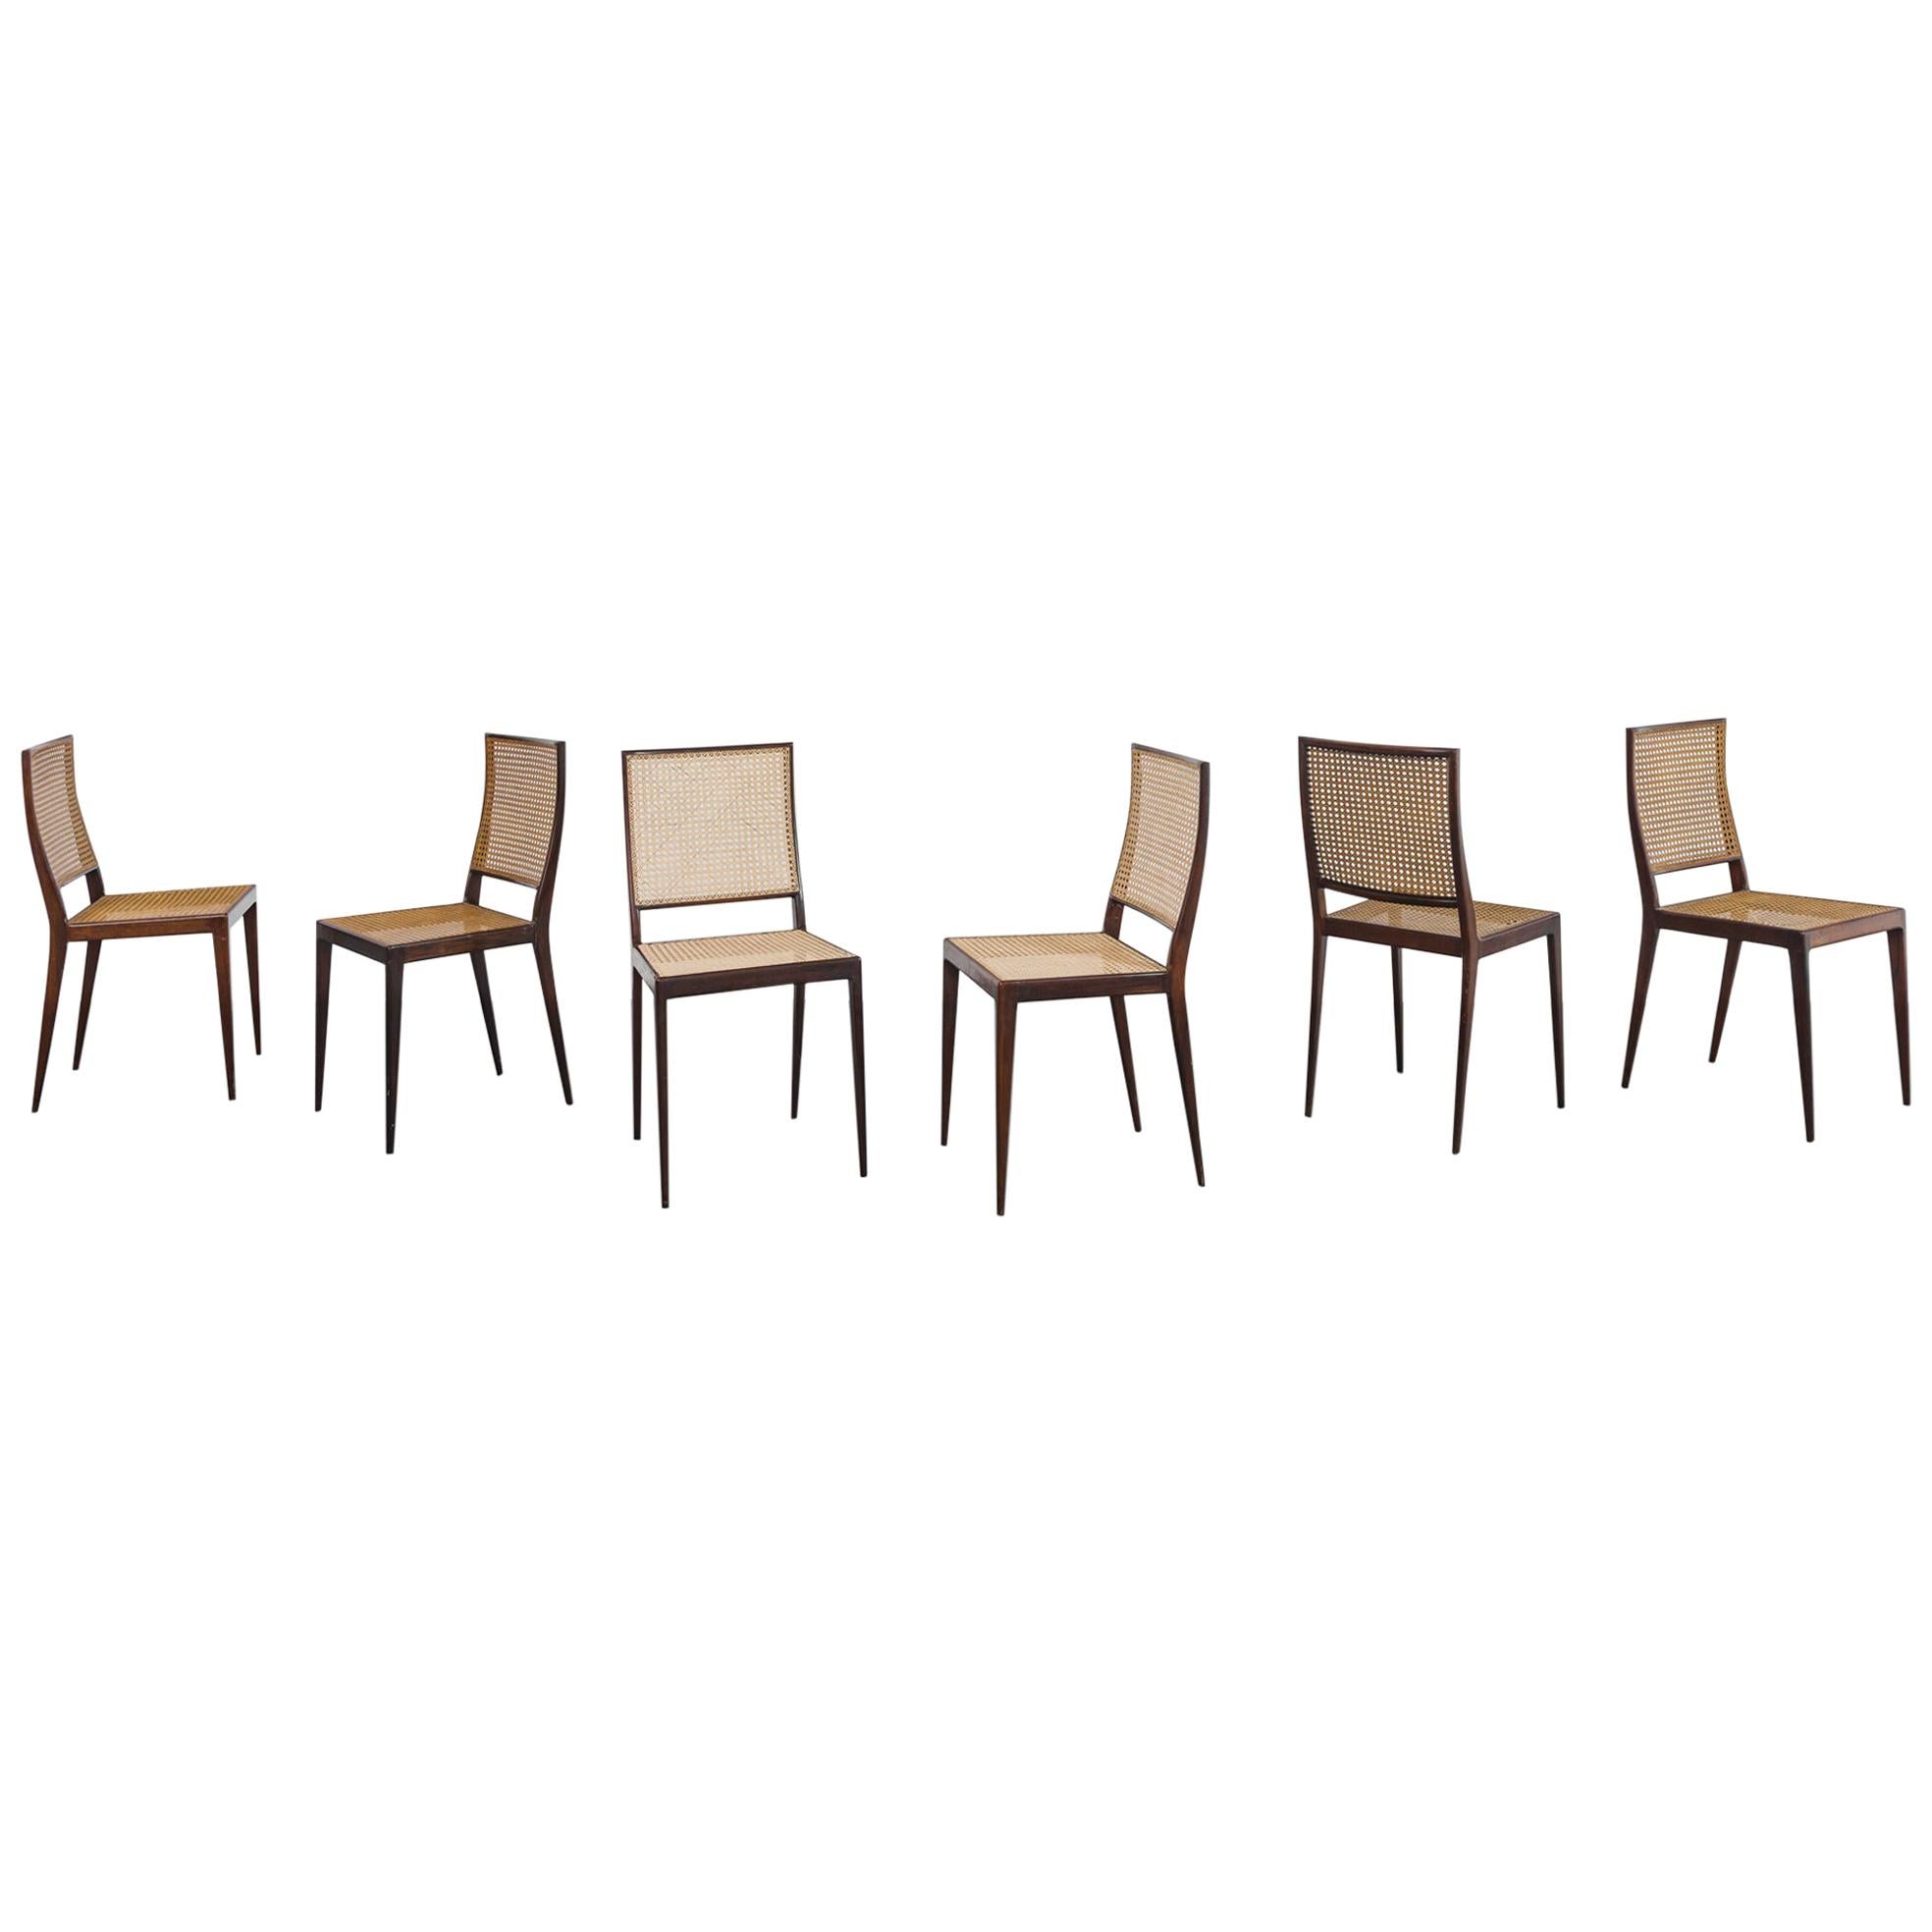 Satz von 6 Unilabor-Stühlen MT 552, Geraldo de Barros, 1960er Jahre, brasilianisches Design